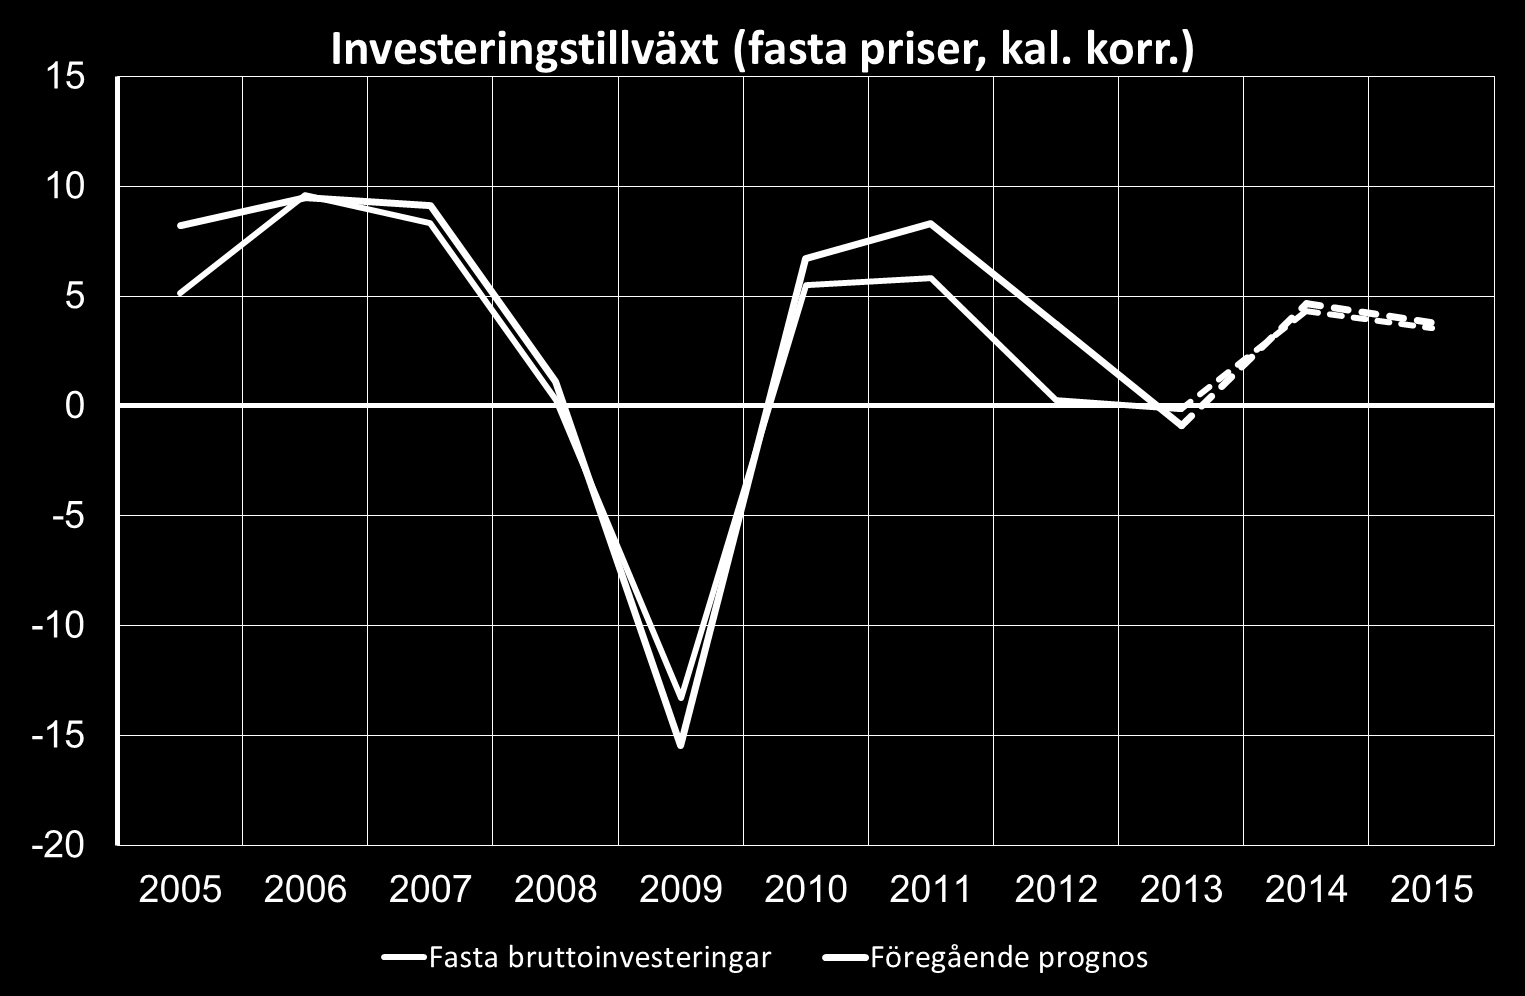 Sämre lönsamhet påverkar redan låga investeringar Historisk investeringstillväxt svagare än trott Svenska företag har underinvesterat under en period Investeringsvolymen första halvåret